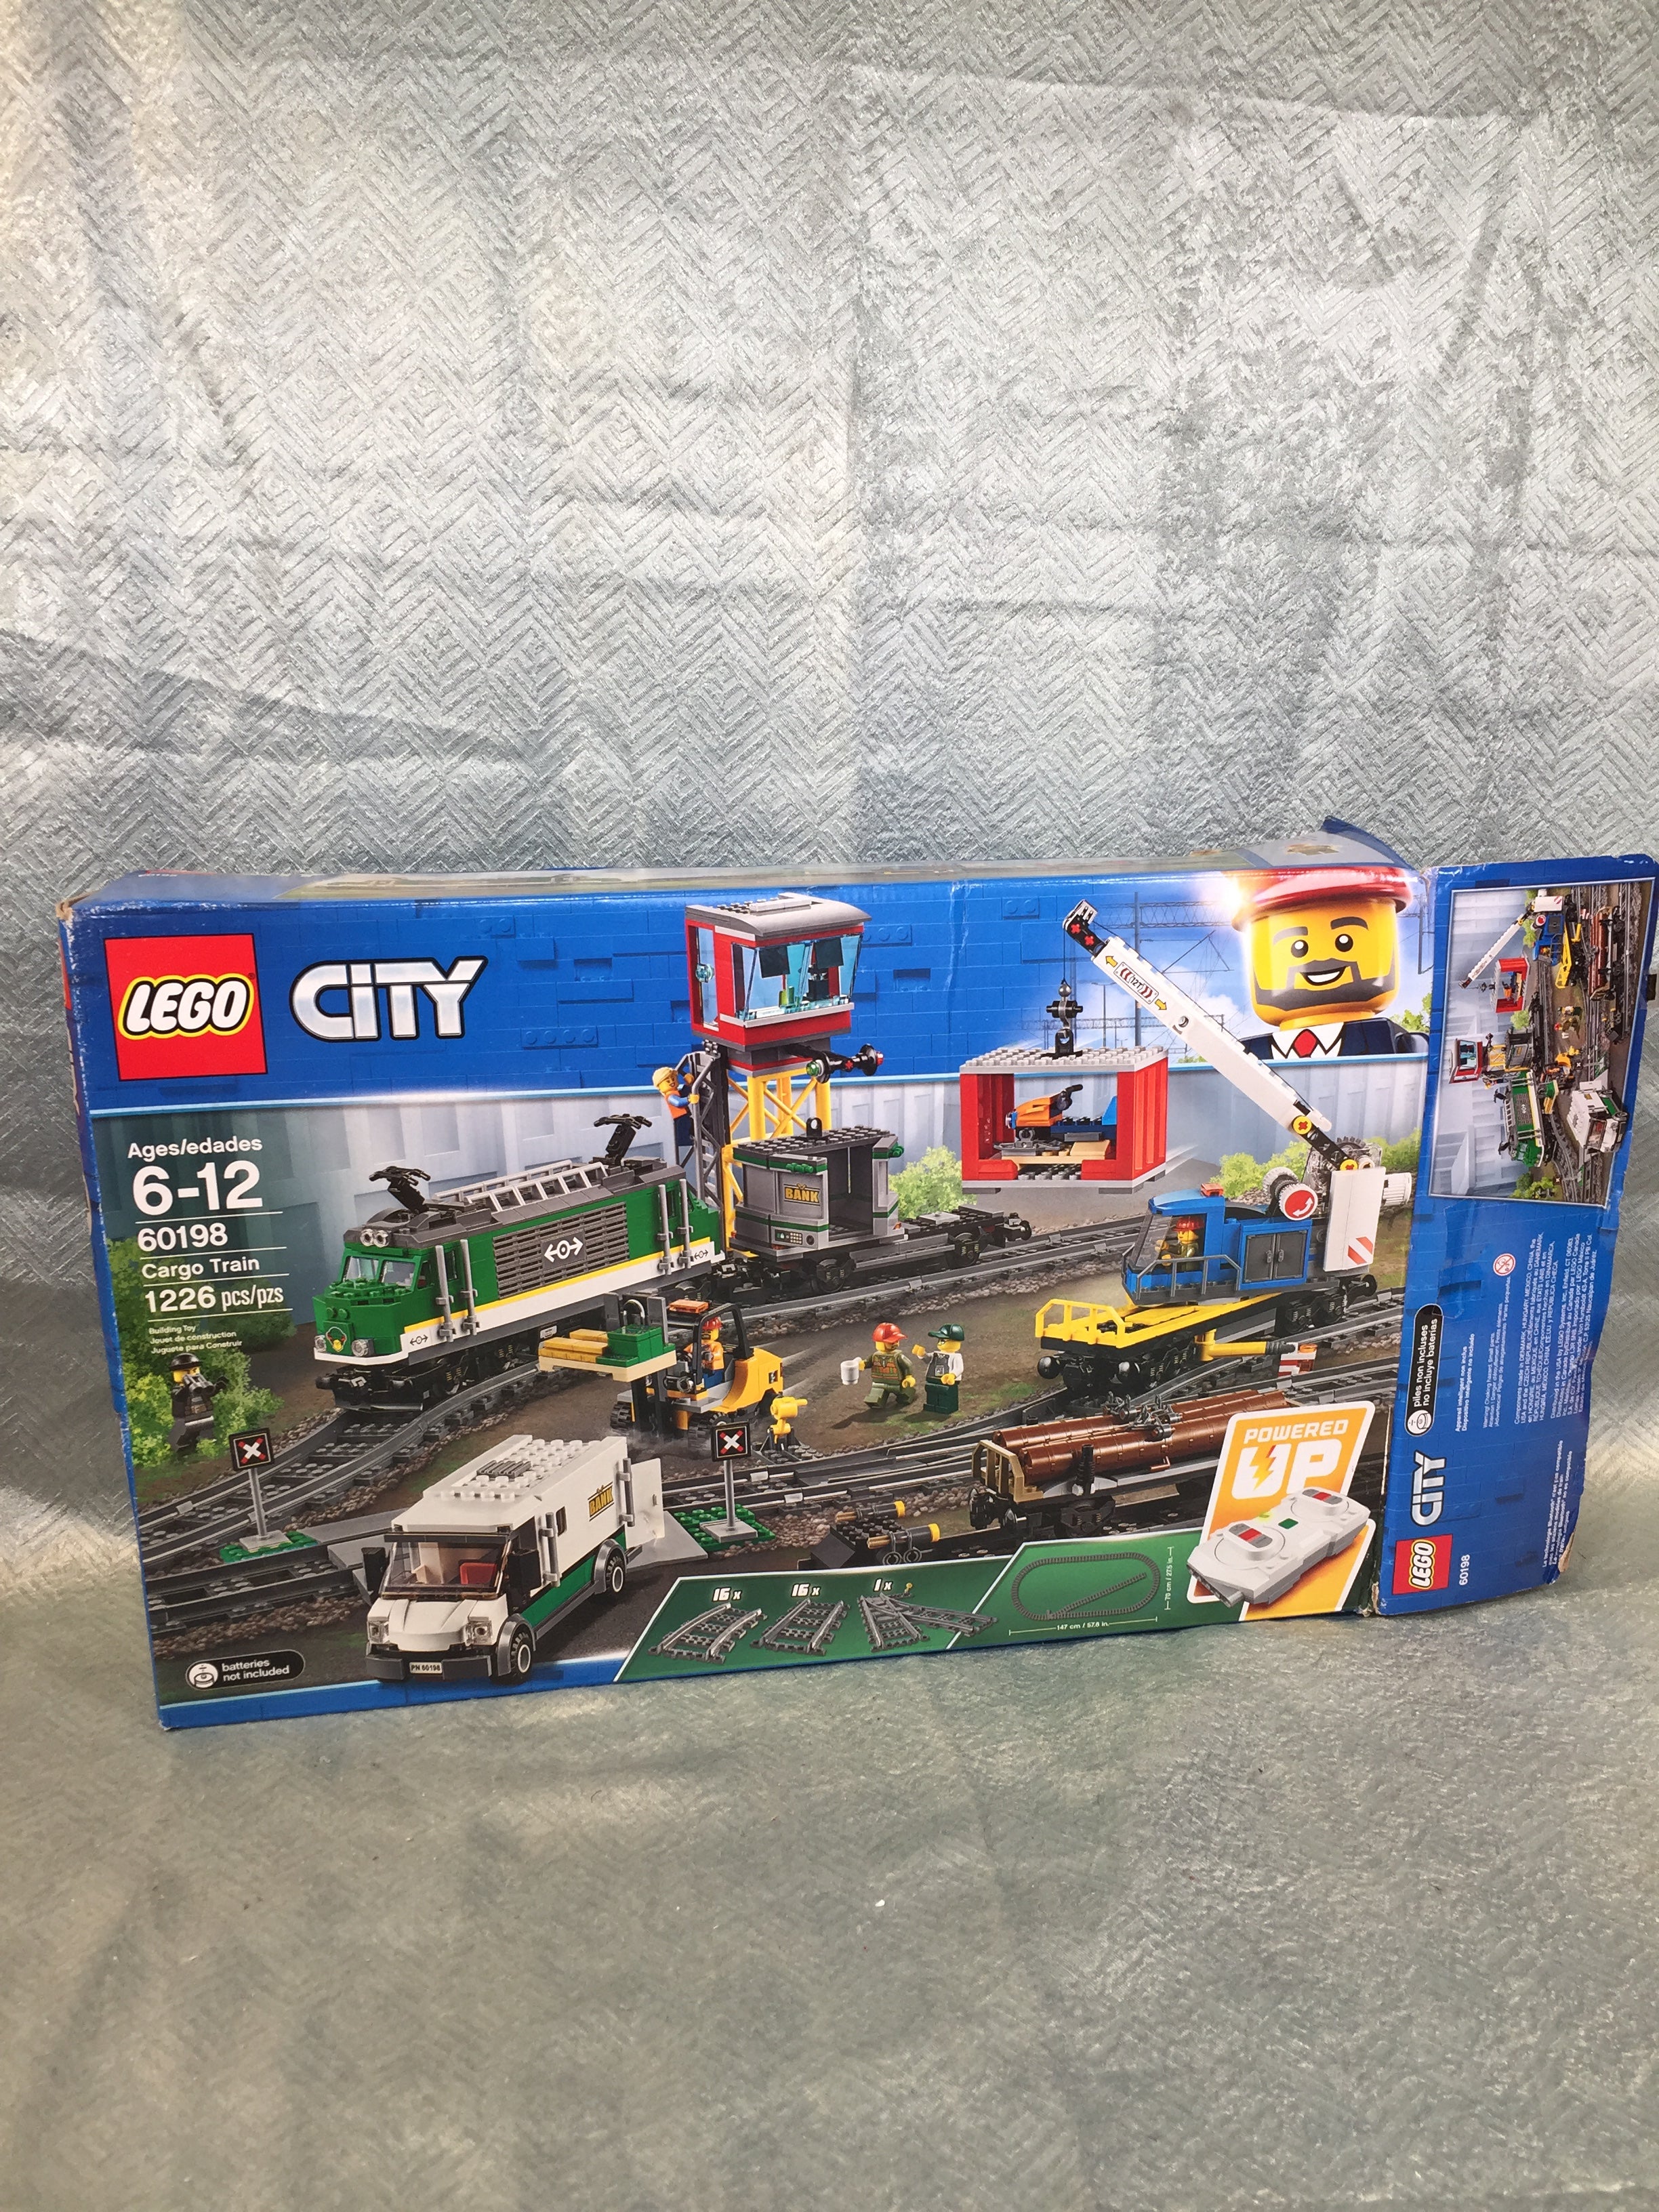 LEGO City Cargo Train 60198 Exclusive Remote Control Train Set - OPEN BOX (7609043812590)